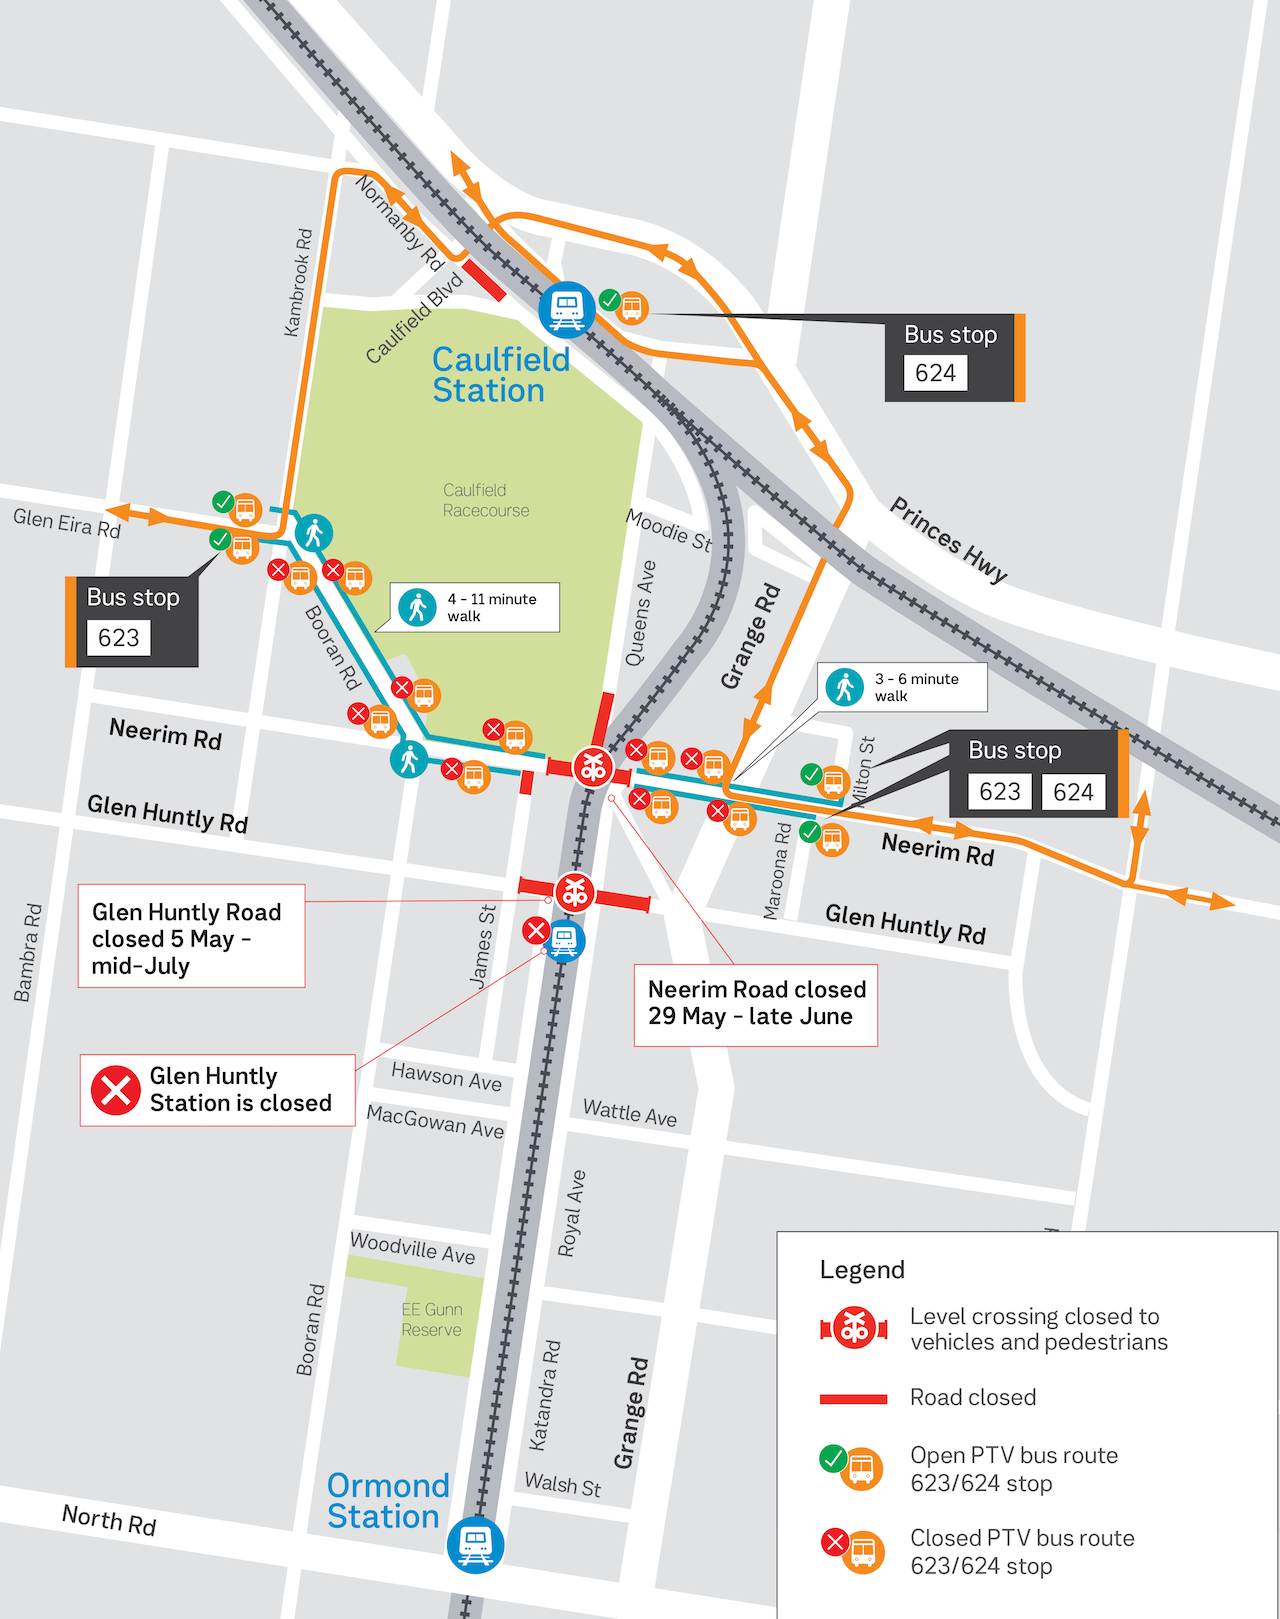 Map showing bus route diversion until late June